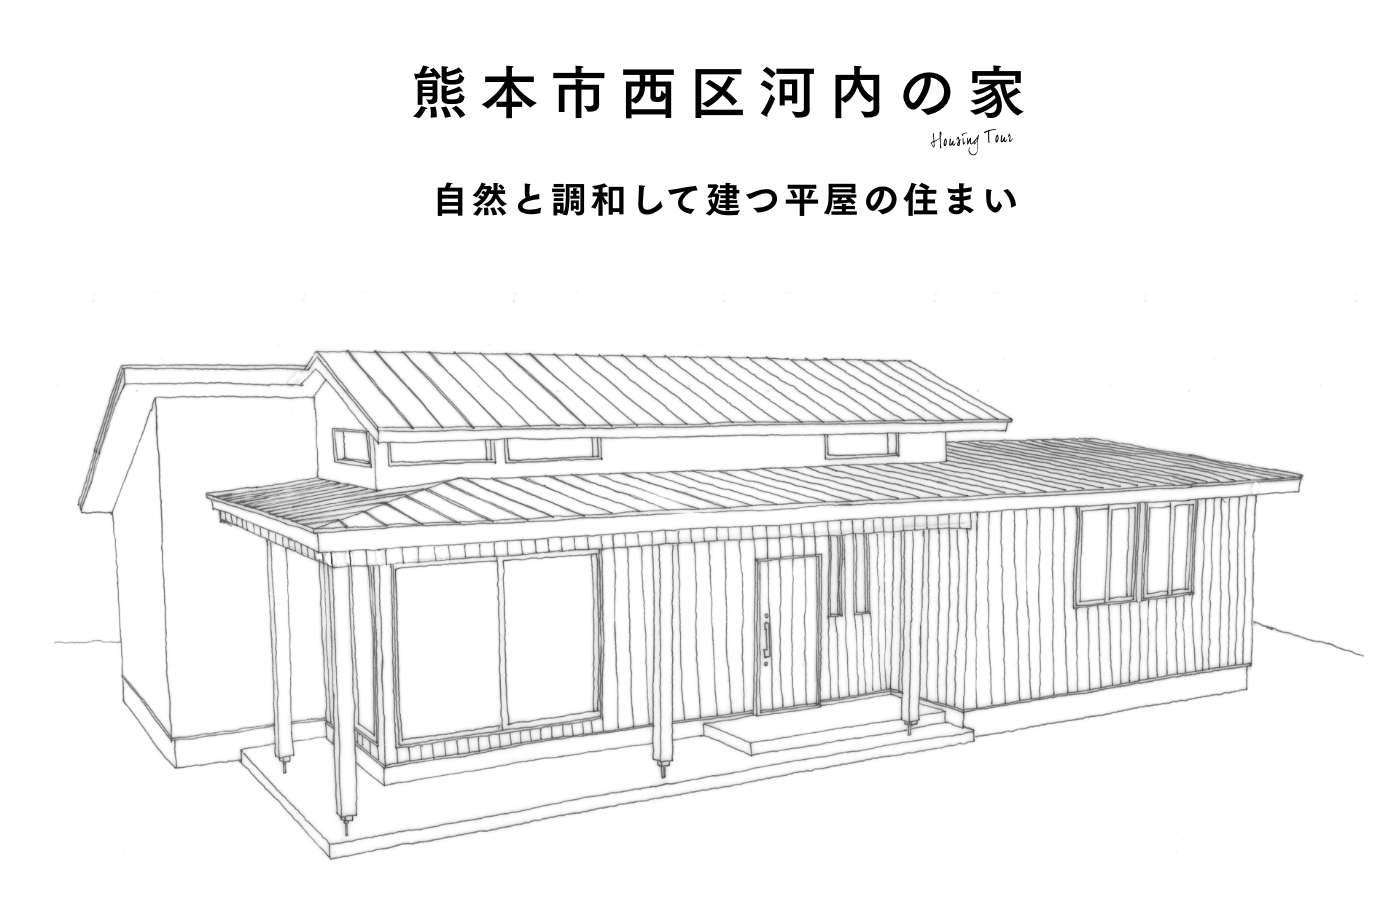 熊本市西区河内の家 自然と調和して建つ平屋の住まい 完成見学会開催